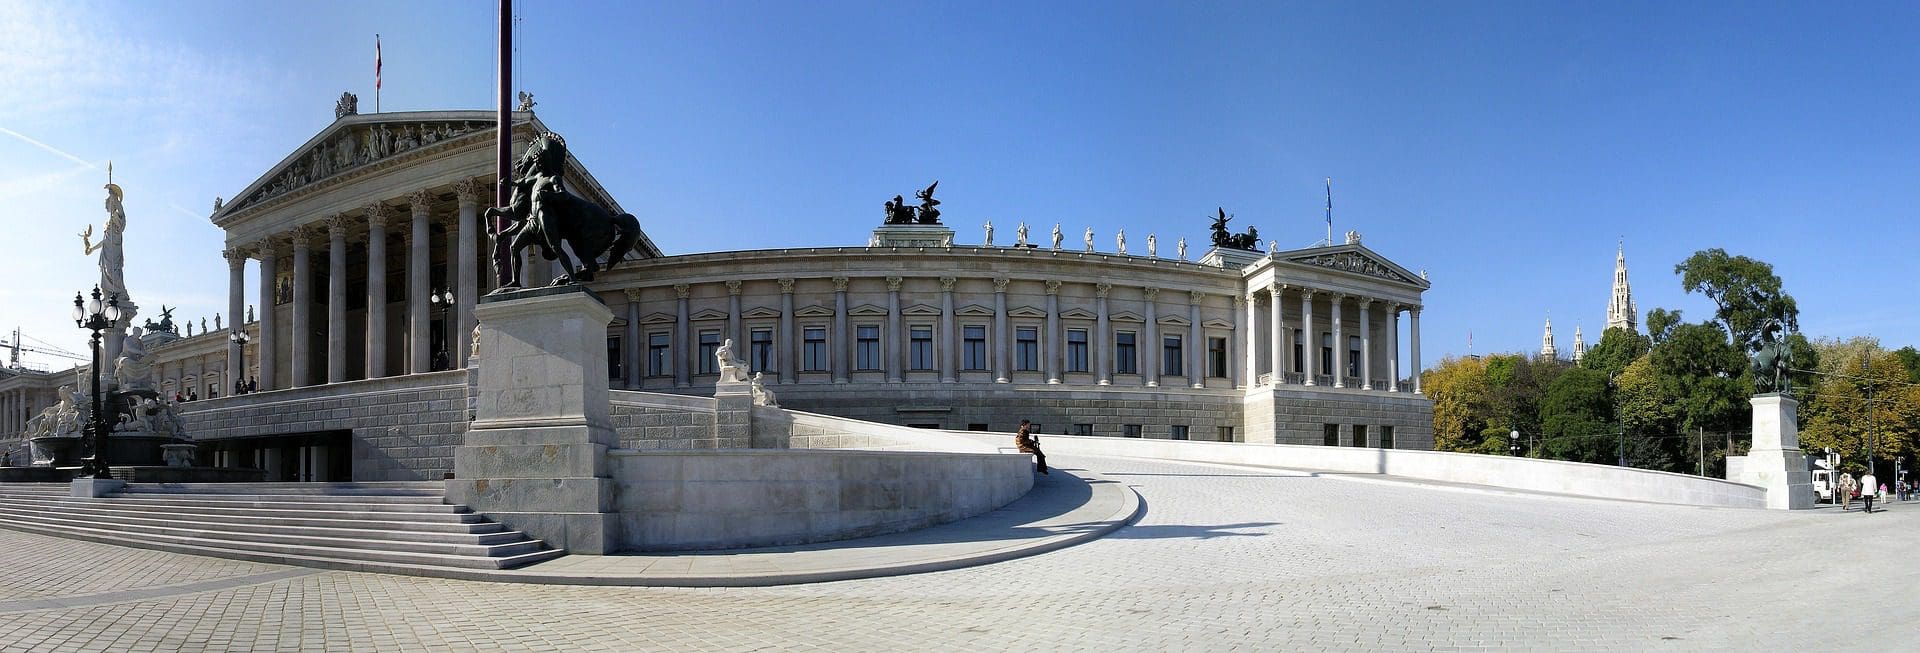 Будівля парламенту у Відні